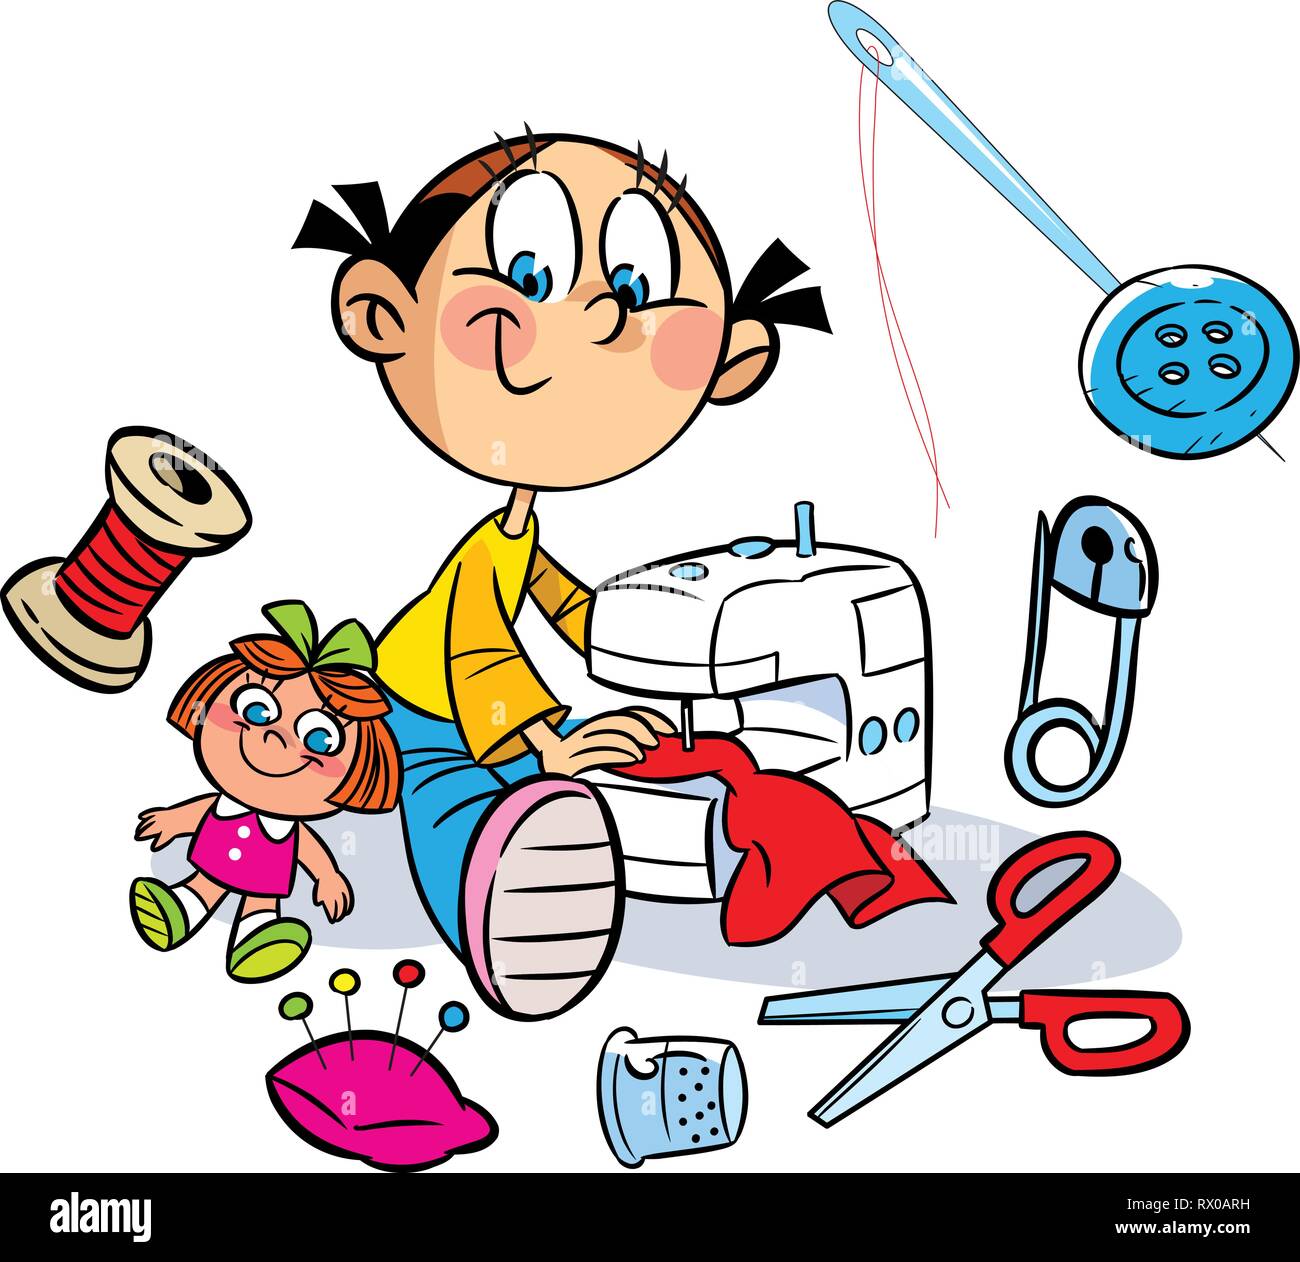 La figura mostra una bambina che cuce sulla macchina per cucire vestiti per la bambola. In prossimità di essa mostra i vari elementi per cucitura. Illustrazione fatto Illustrazione Vettoriale